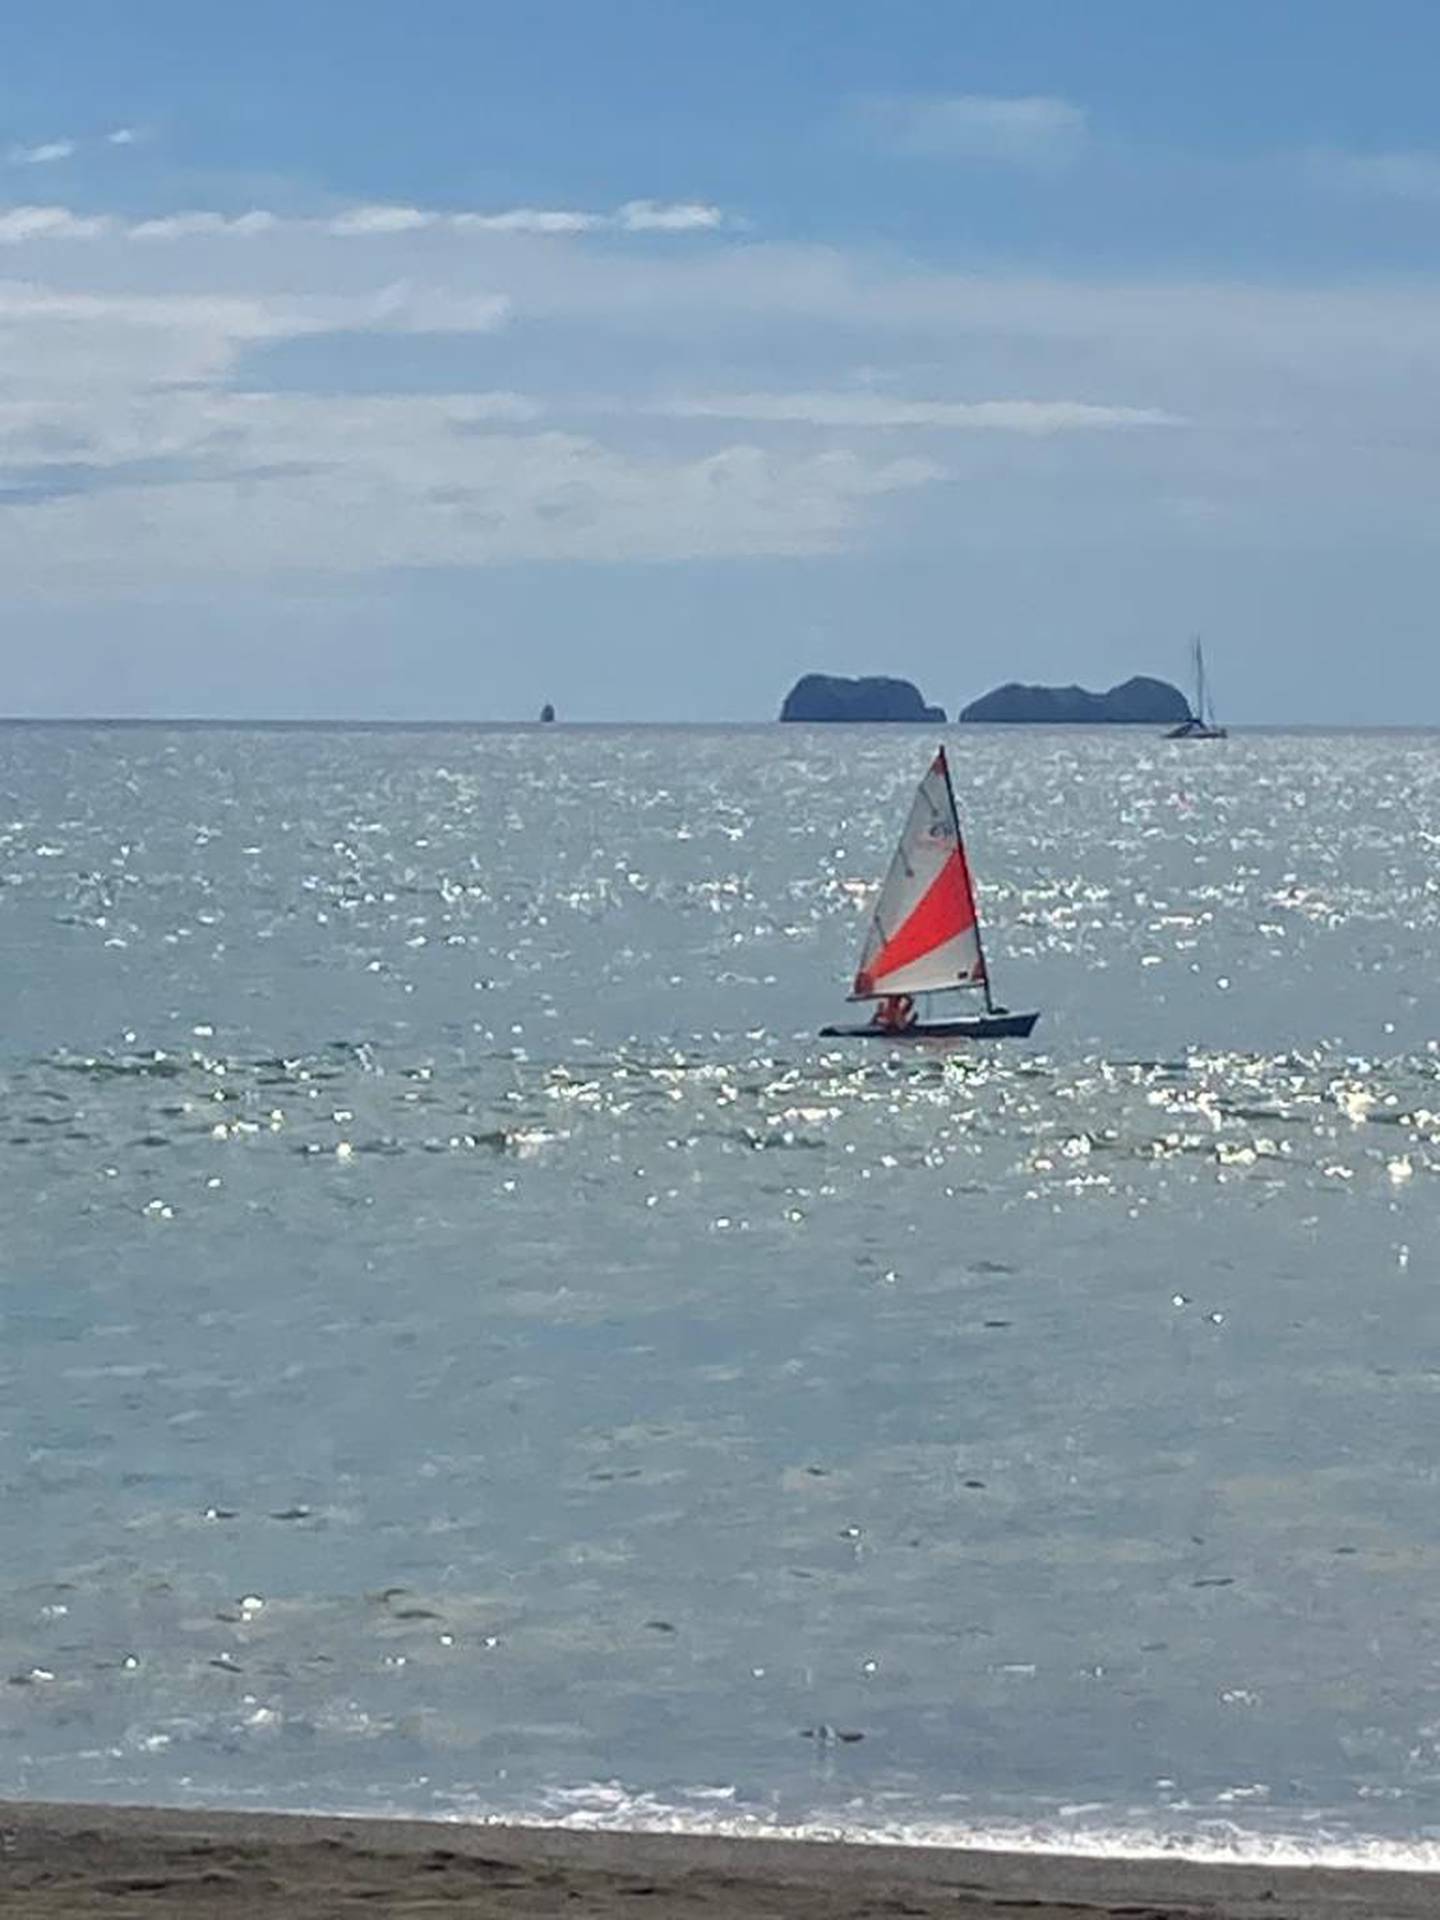 En playa Potrero de Santa Cruz, Guanacaste no llovió este martes y el tiempo prevalece soleado. Foto: Cortesía Marcela Cantero.